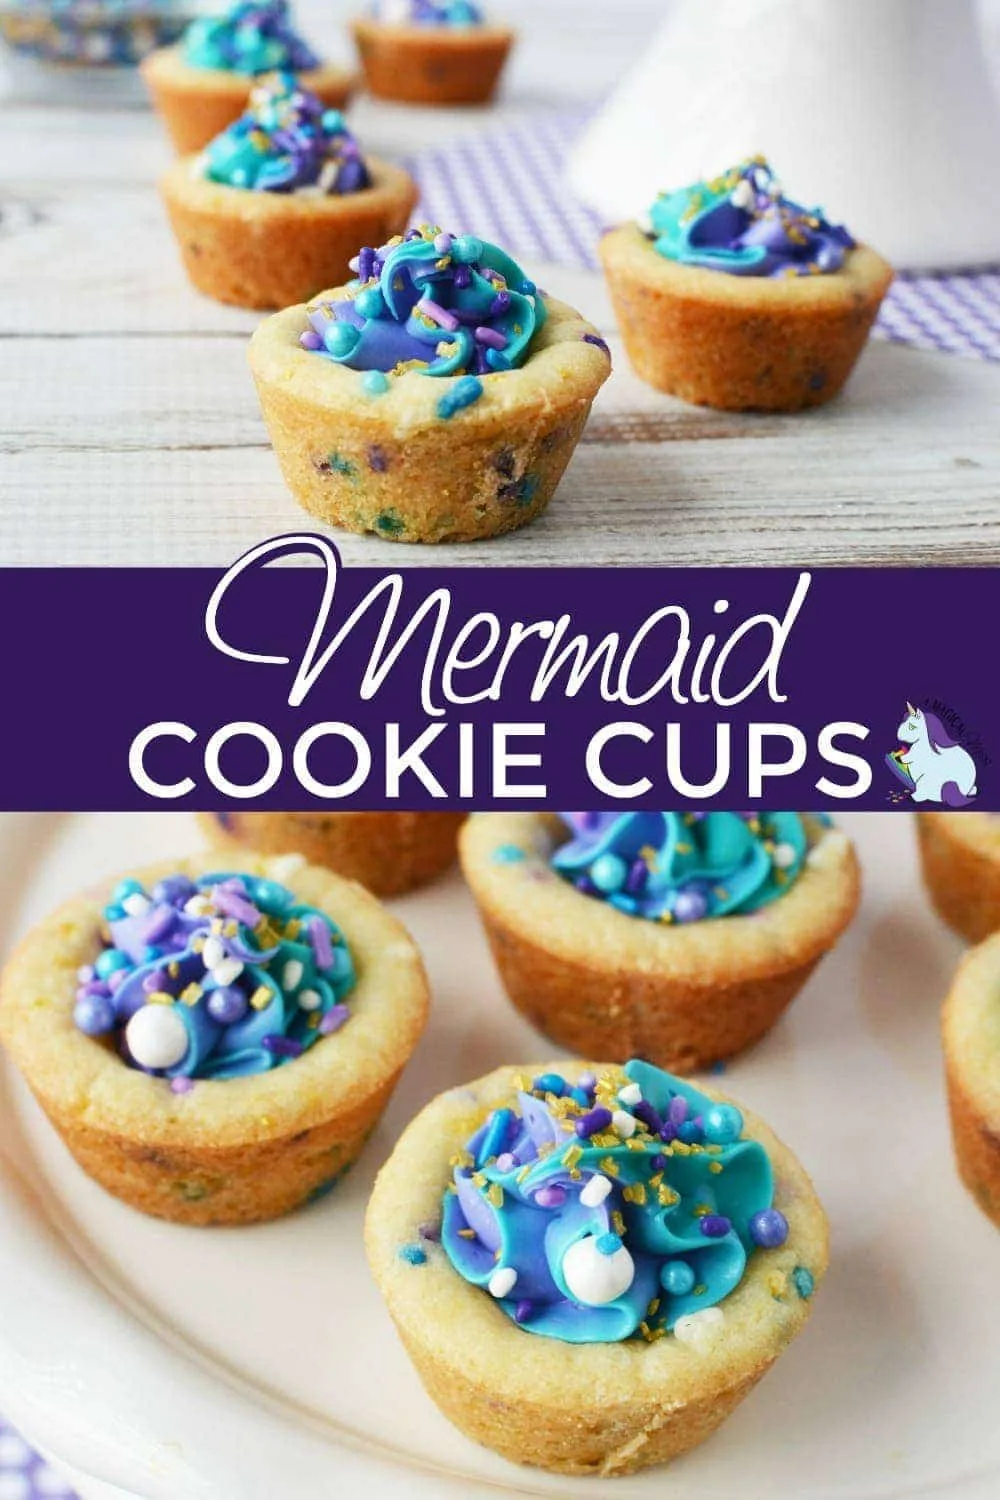 Mermaid cookies cups on display. 